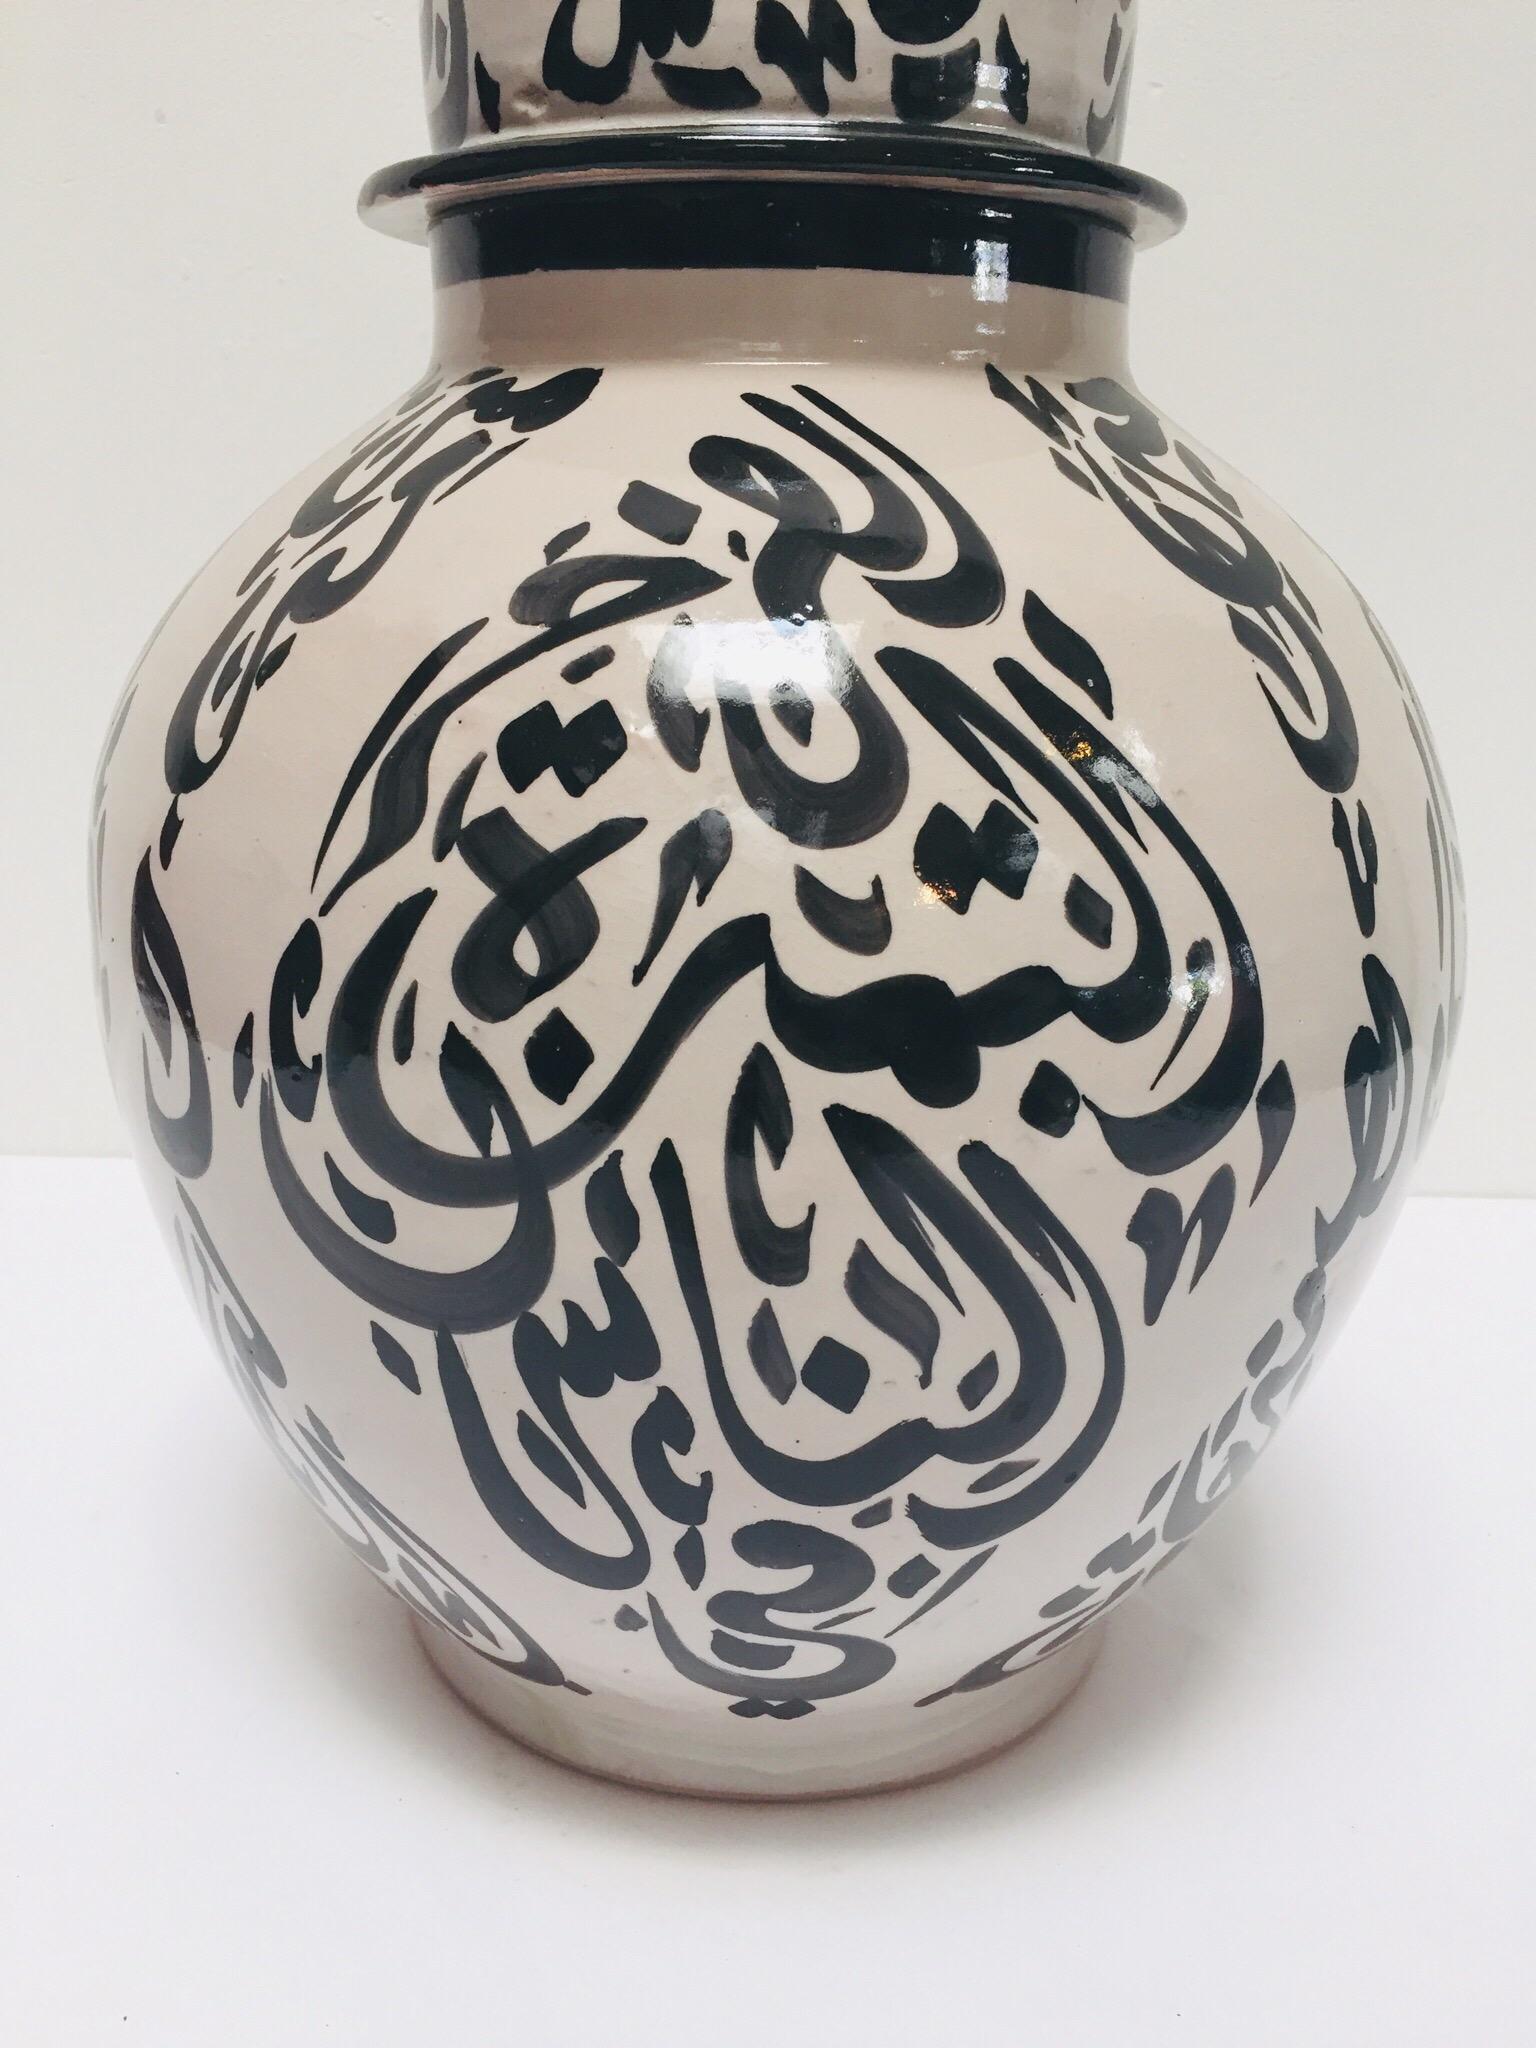 Große glasierte marokkanische Keramikurne mit Deckel aus Fez.
Keramik im maurischen Stil, handgefertigt und handbemalt mit arabischer Kalligraphie.
Diese Art von Kunstschrift, die kalligraphisch aussieht, wird Lettrismus genannt, eine Kunstform,